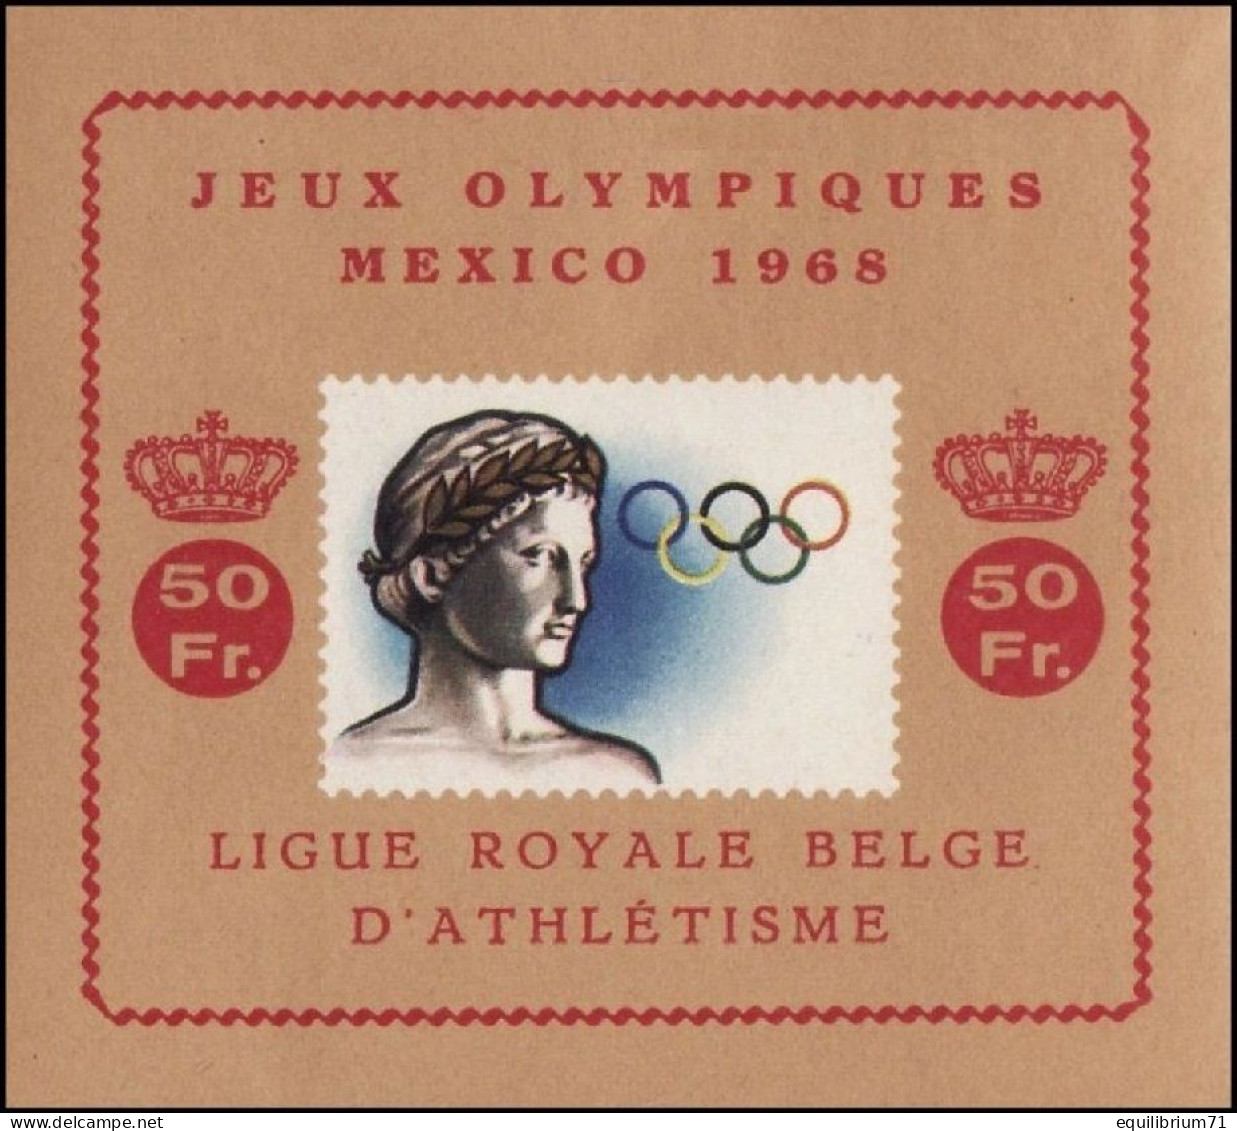 E103** - J.O De Mexico / O.S Te Mexico / Olympische Spiele Von Mexiko / Olympic Games Of Mexico - Sommer 1968: Mexico